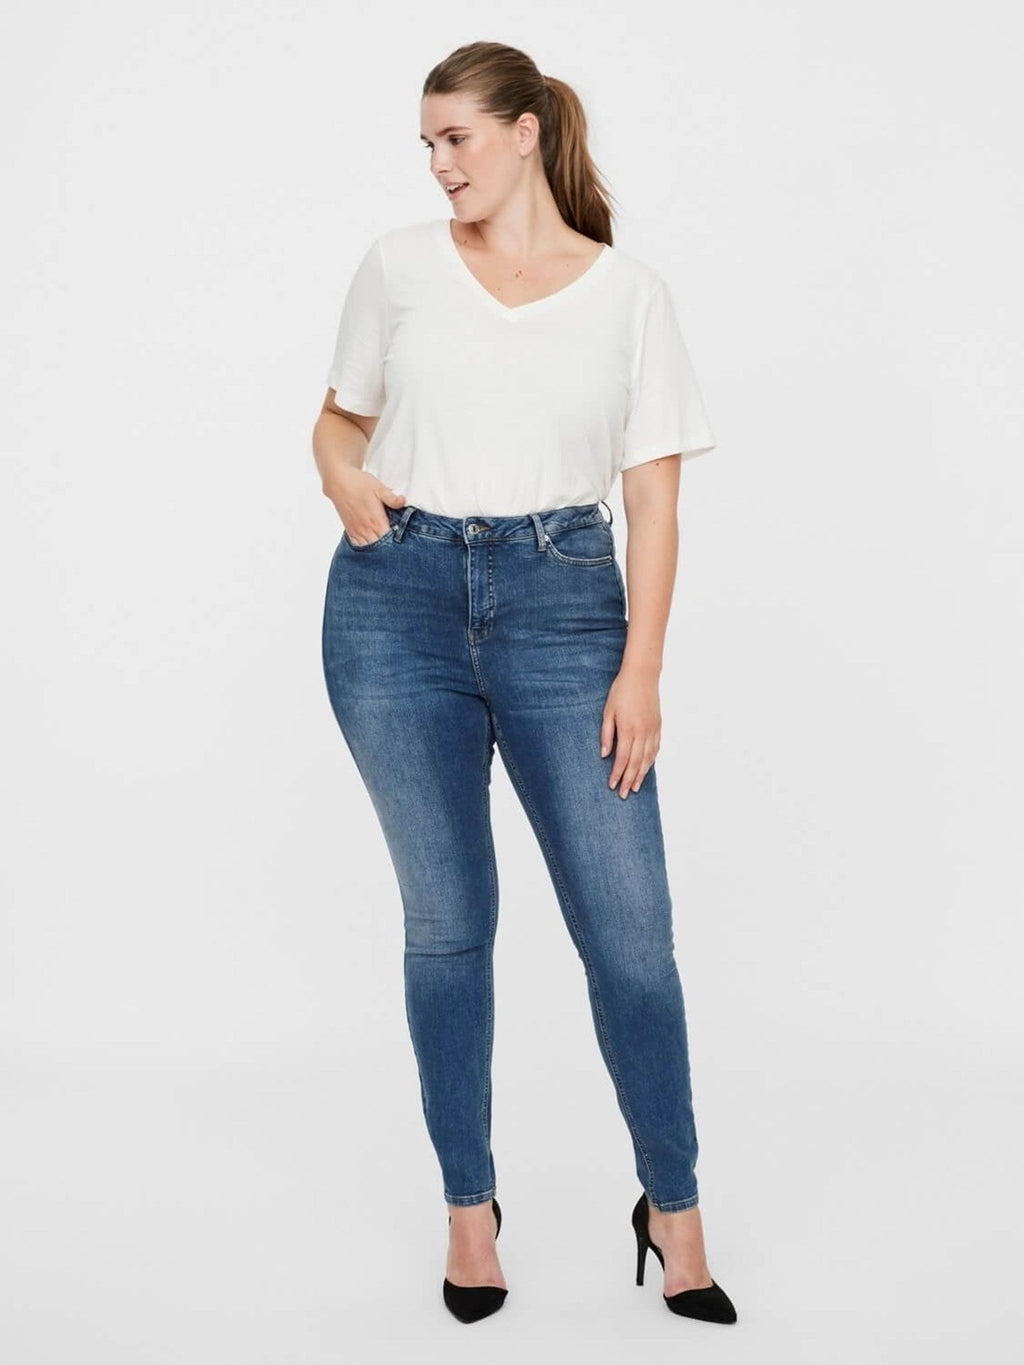 Lora jeans a vita alta (curva) - denim blu medio